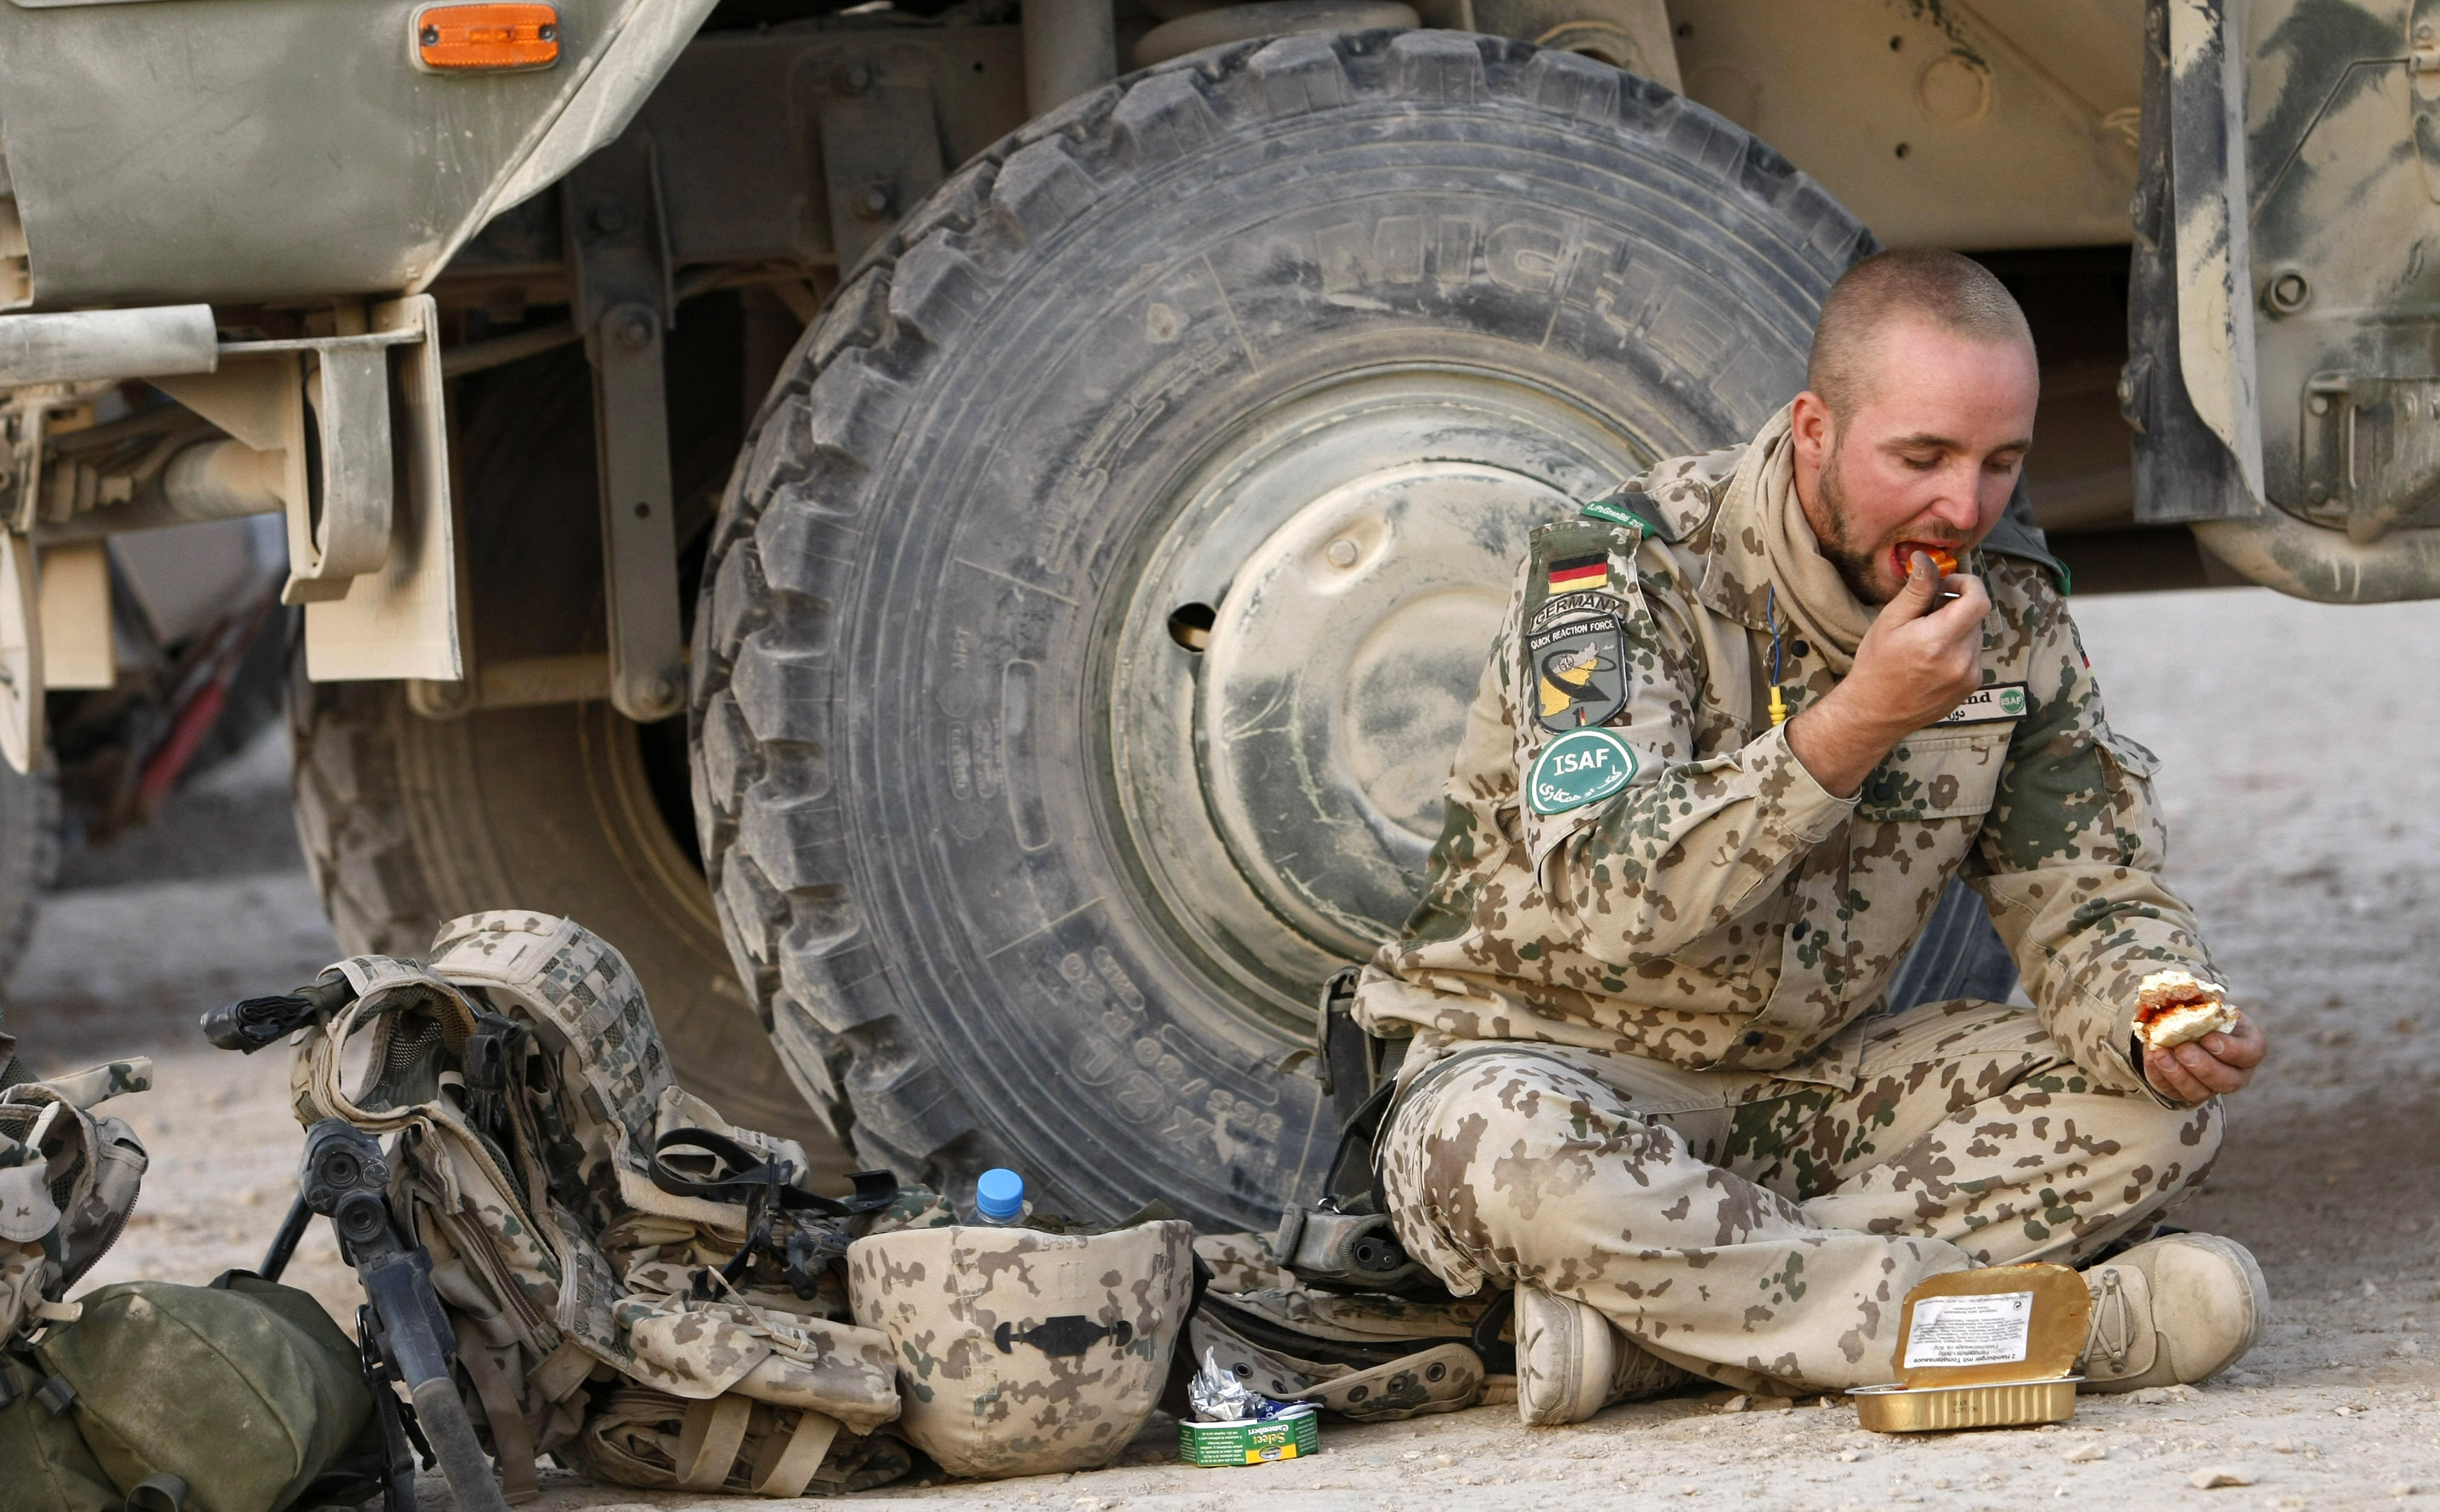 Estas fotos muestran qué comen los militares de todo el mundo